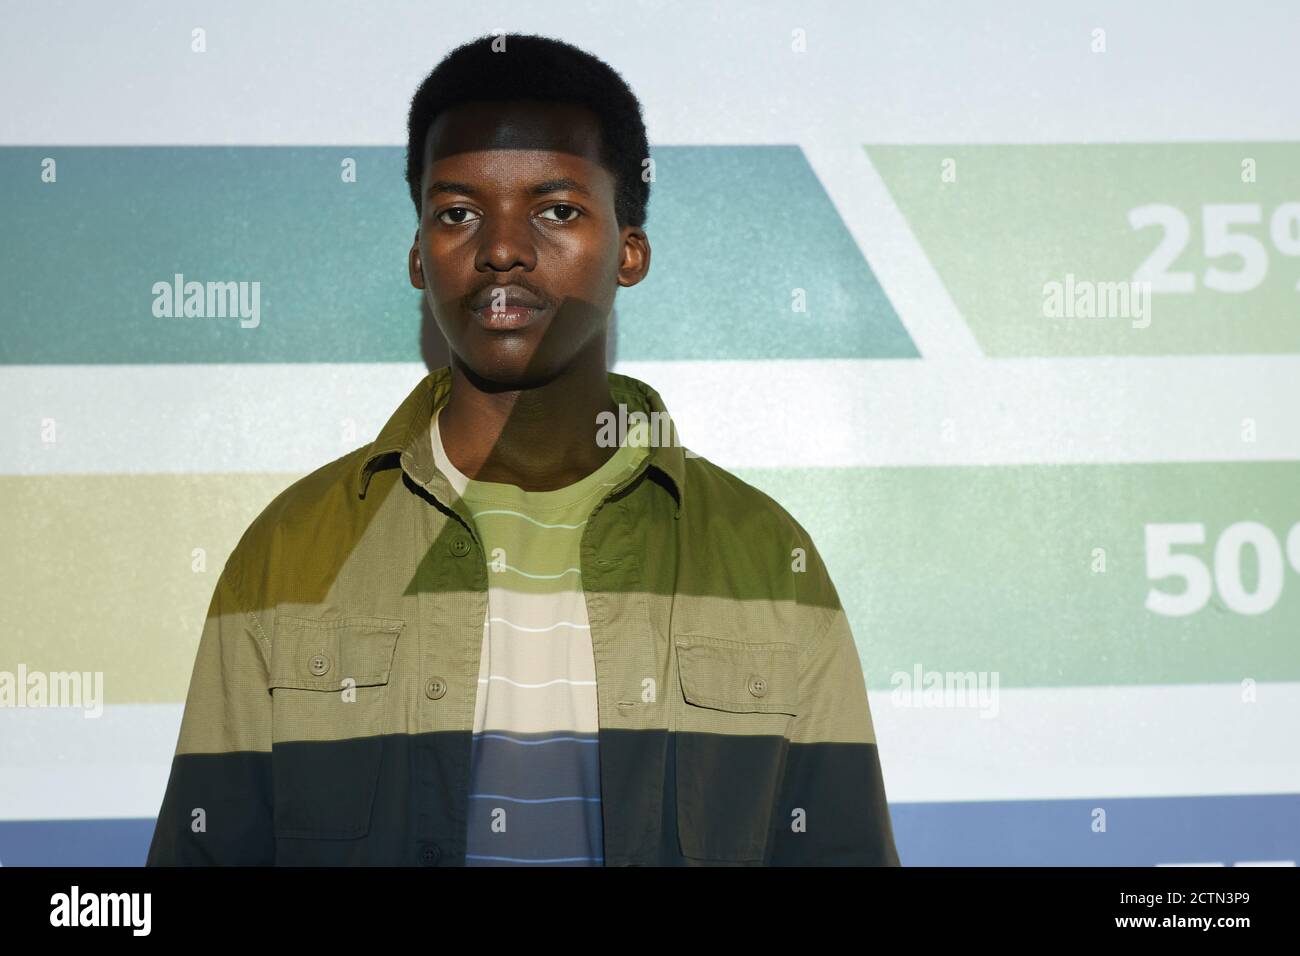 Vita ritratto di giovane afroamericano in piedi da schermo proiettore con strisce e numeri su di esso, spazio di copia Foto Stock